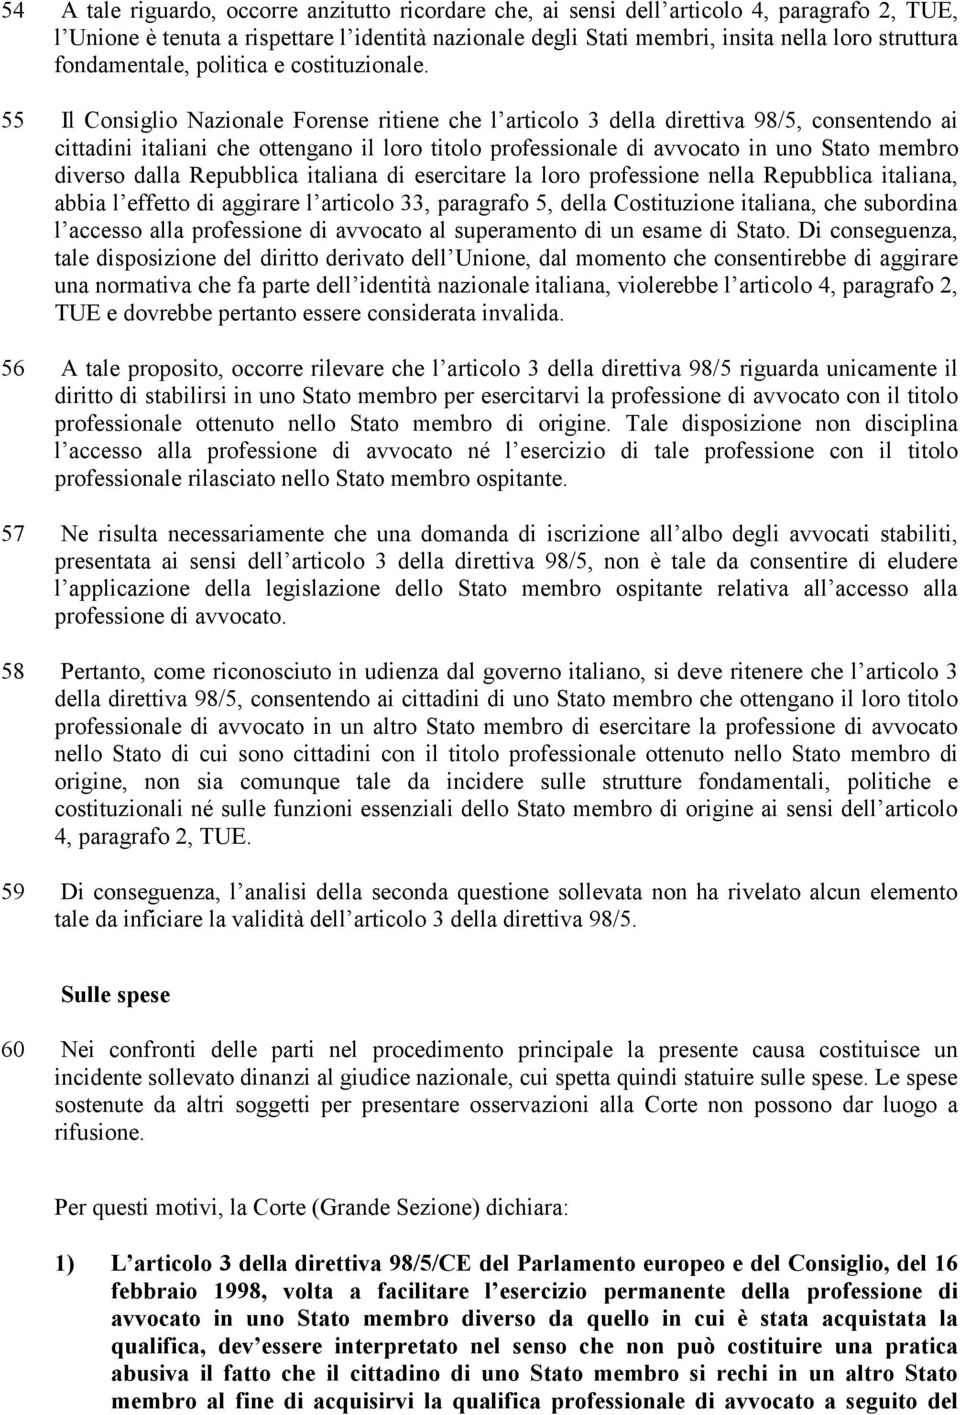 55 Il Consiglio Nazionale Forense ritiene che l articolo 3 della direttiva 98/5, consentendo ai cittadini italiani che ottengano il loro titolo professionale di avvocato in uno Stato membro diverso